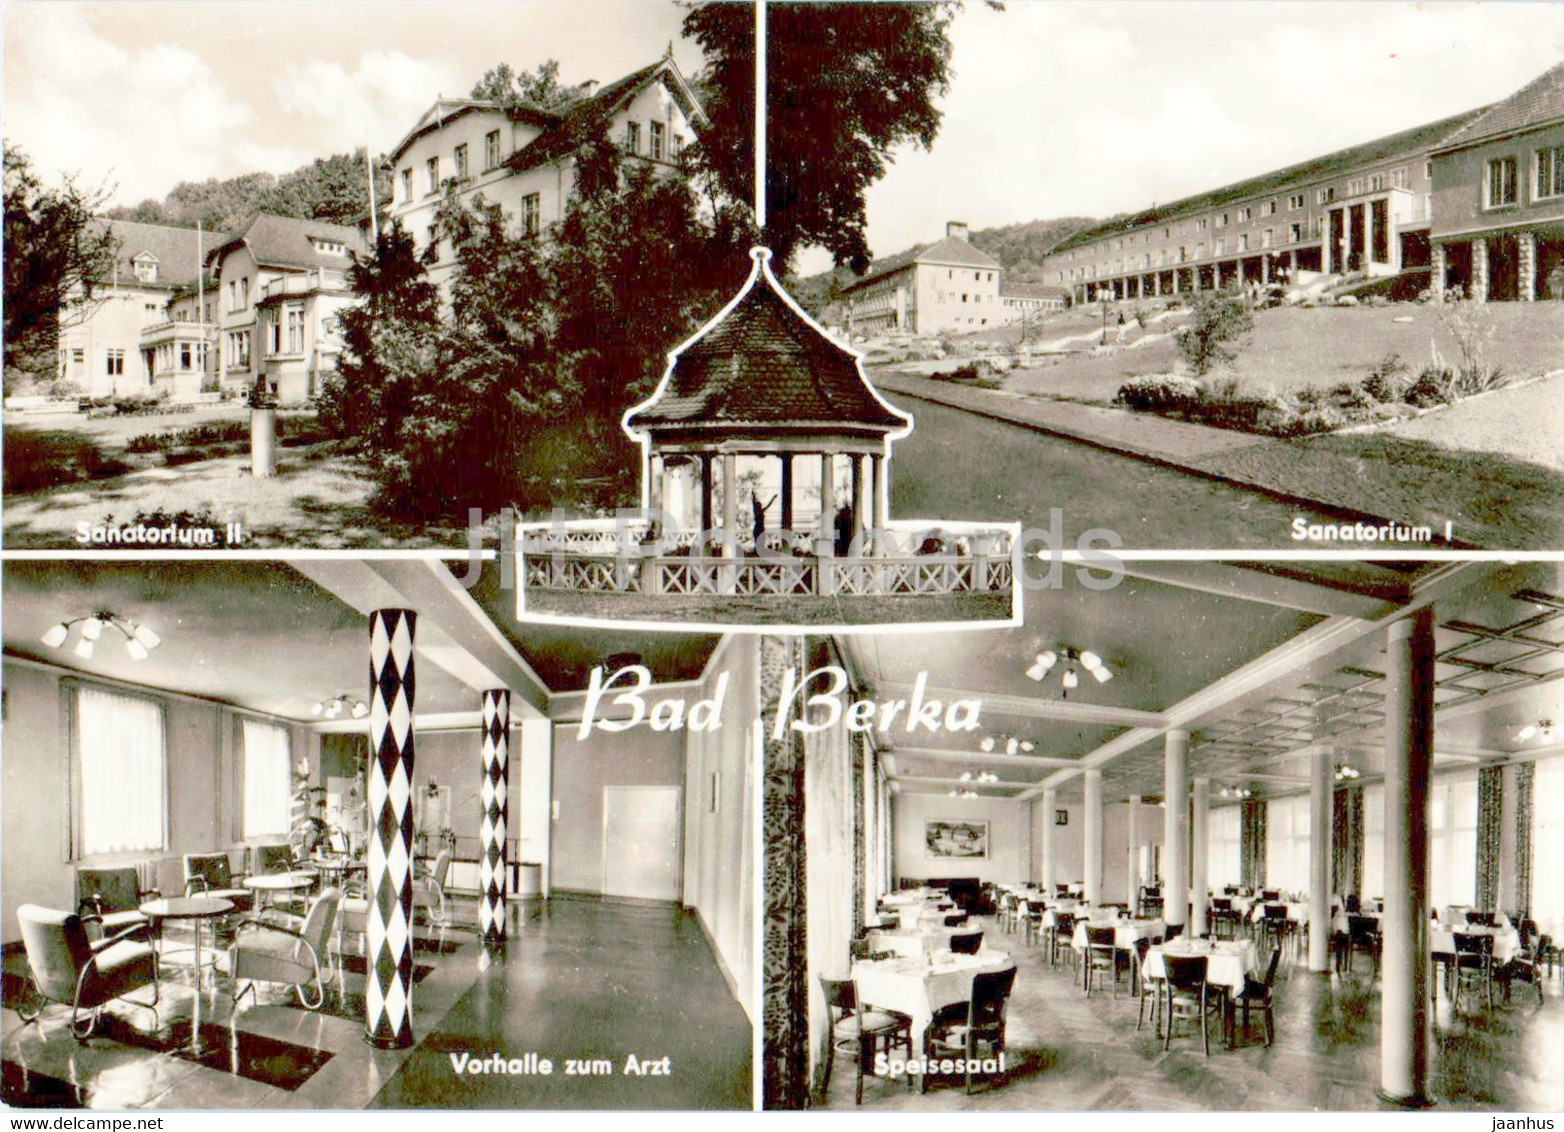 Bad Berka - Sanatorium II - Sanatorium I - Vorhalle Zum Arzt - Speisesaal - Old Postcard - 1968 - Germany DDR - Used - Bad Berka